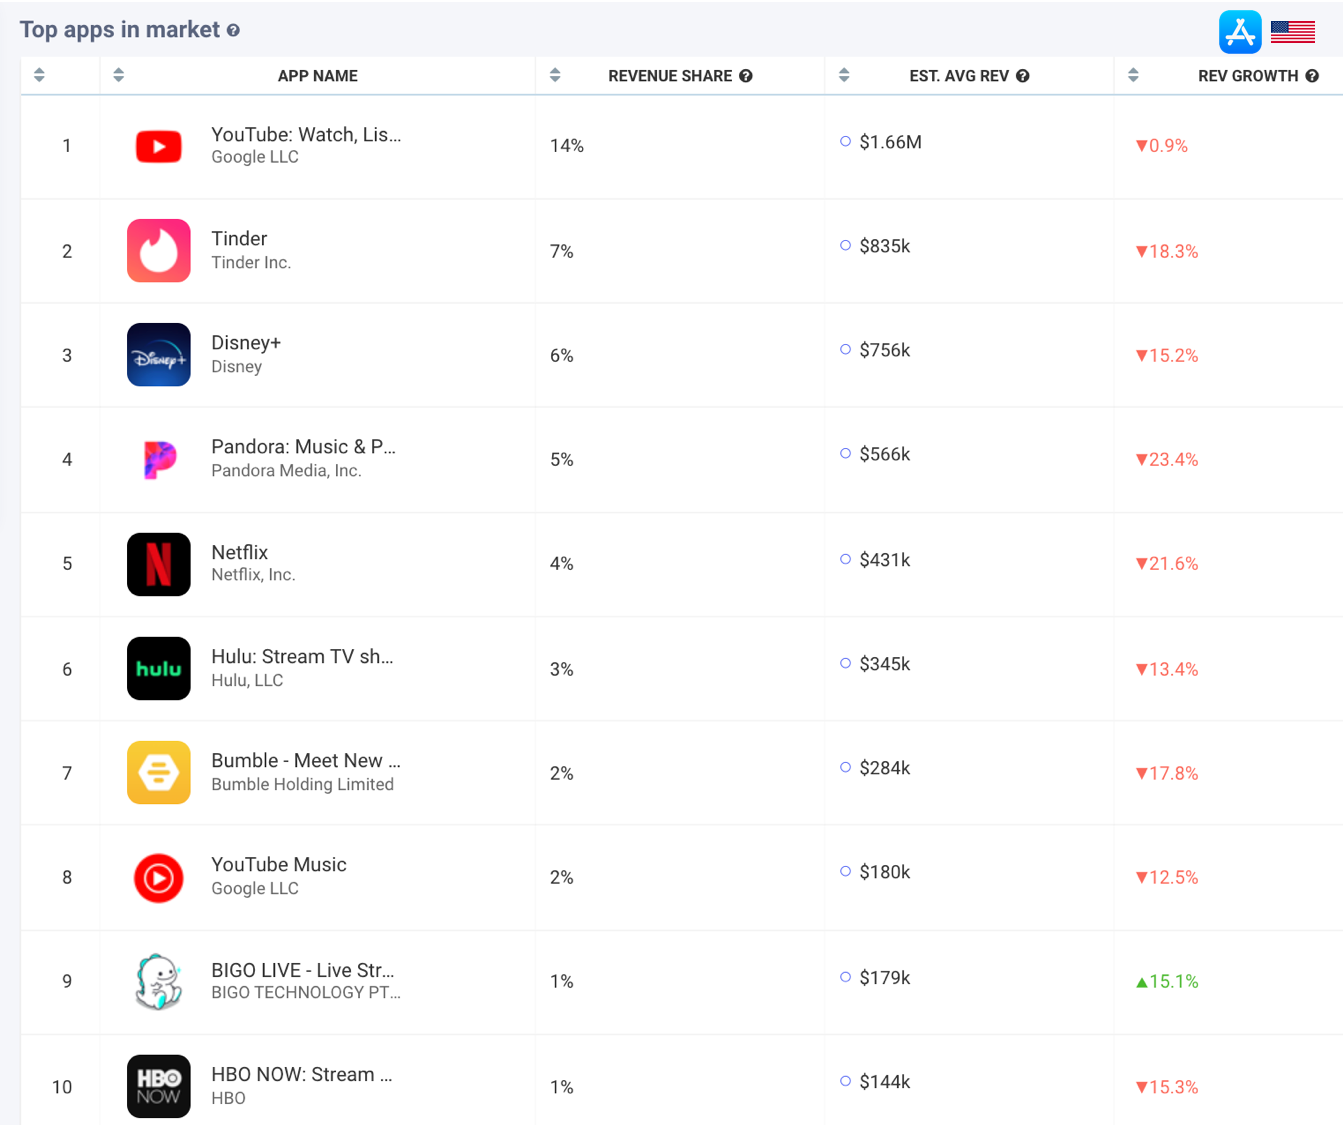 AppTweak Market Intelligence: Top Revenue Apps in the US Apple App Store